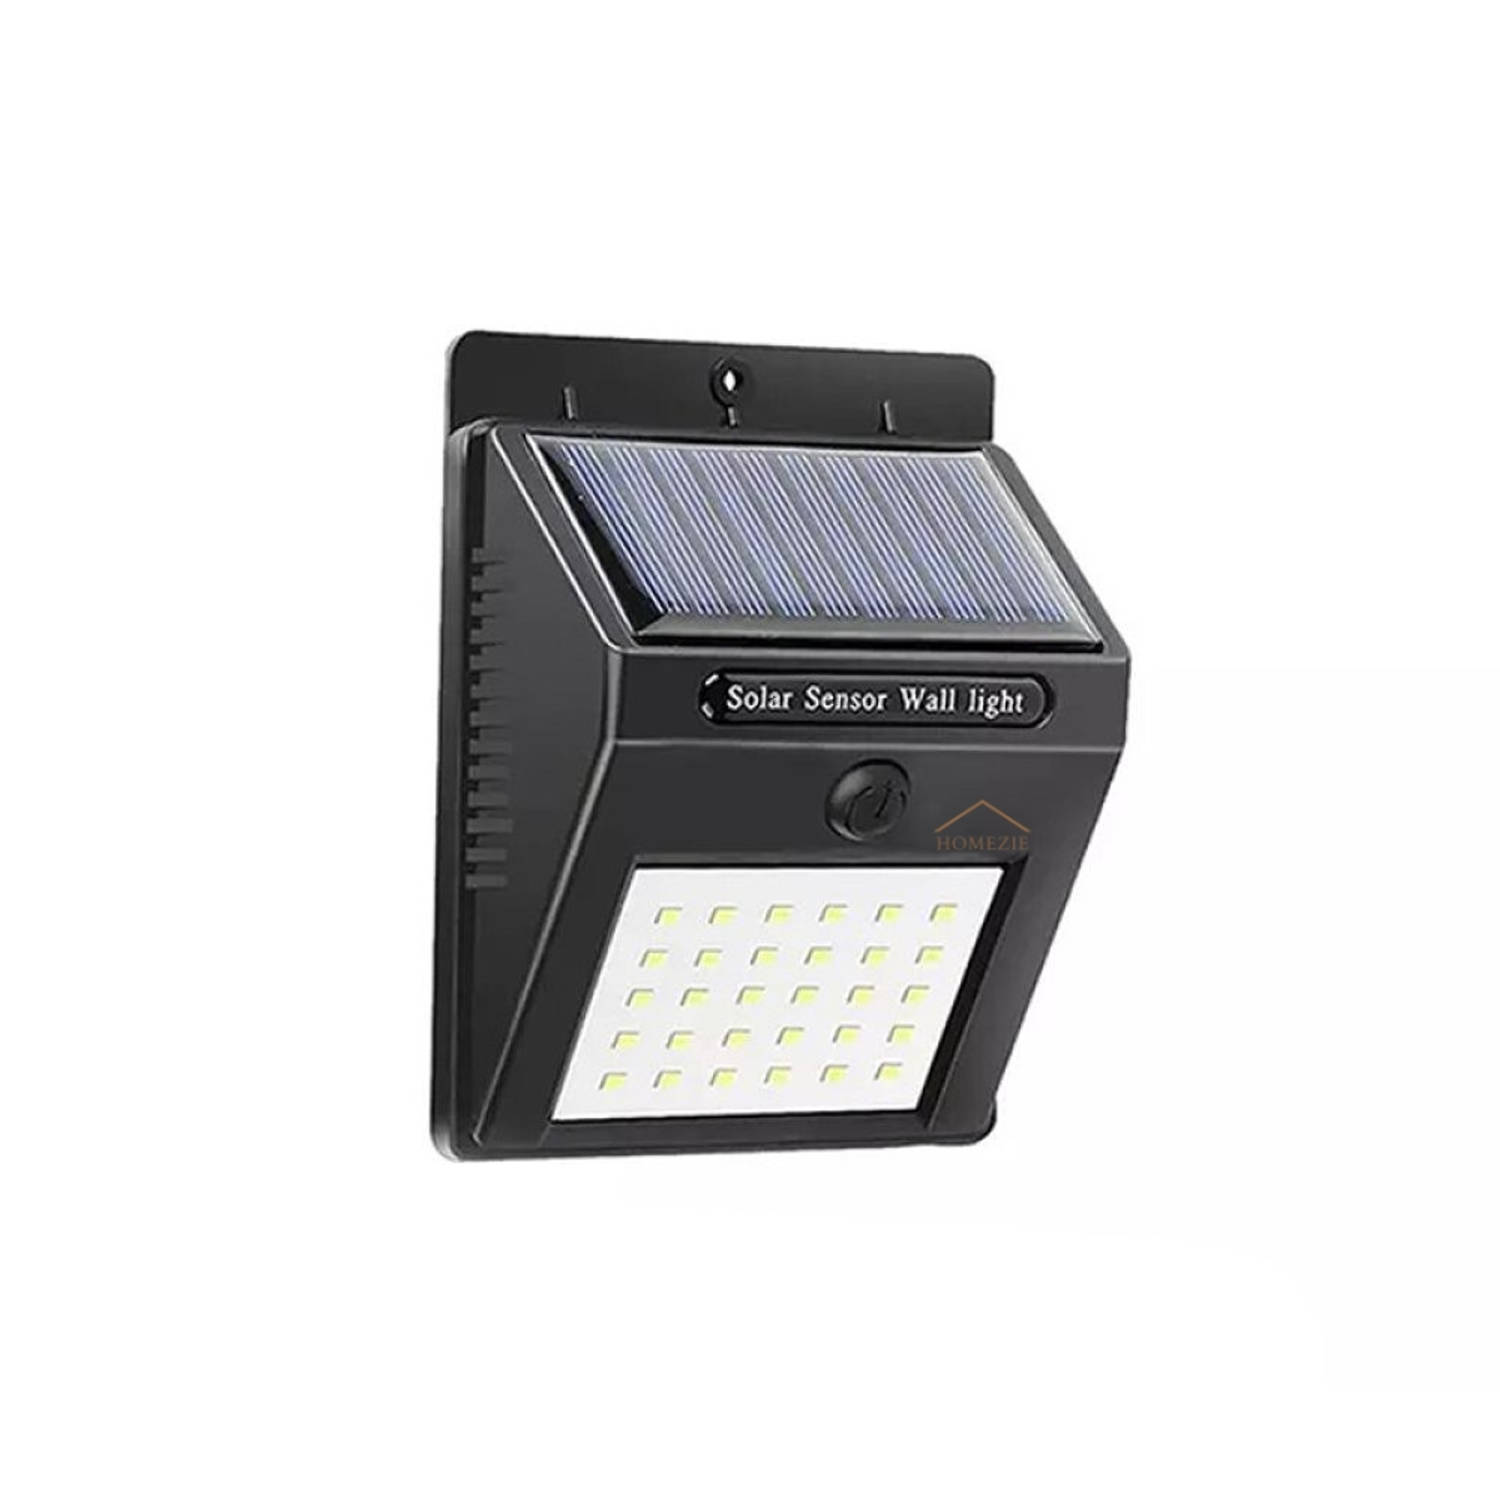 Homezie Solar Buitenlamp met bewegingssensor - Op Zonne-energie - IP65 Waterdicht - Solar tuinverlichting - Solar wandlamp buiten - Wandlamp op zonne energie